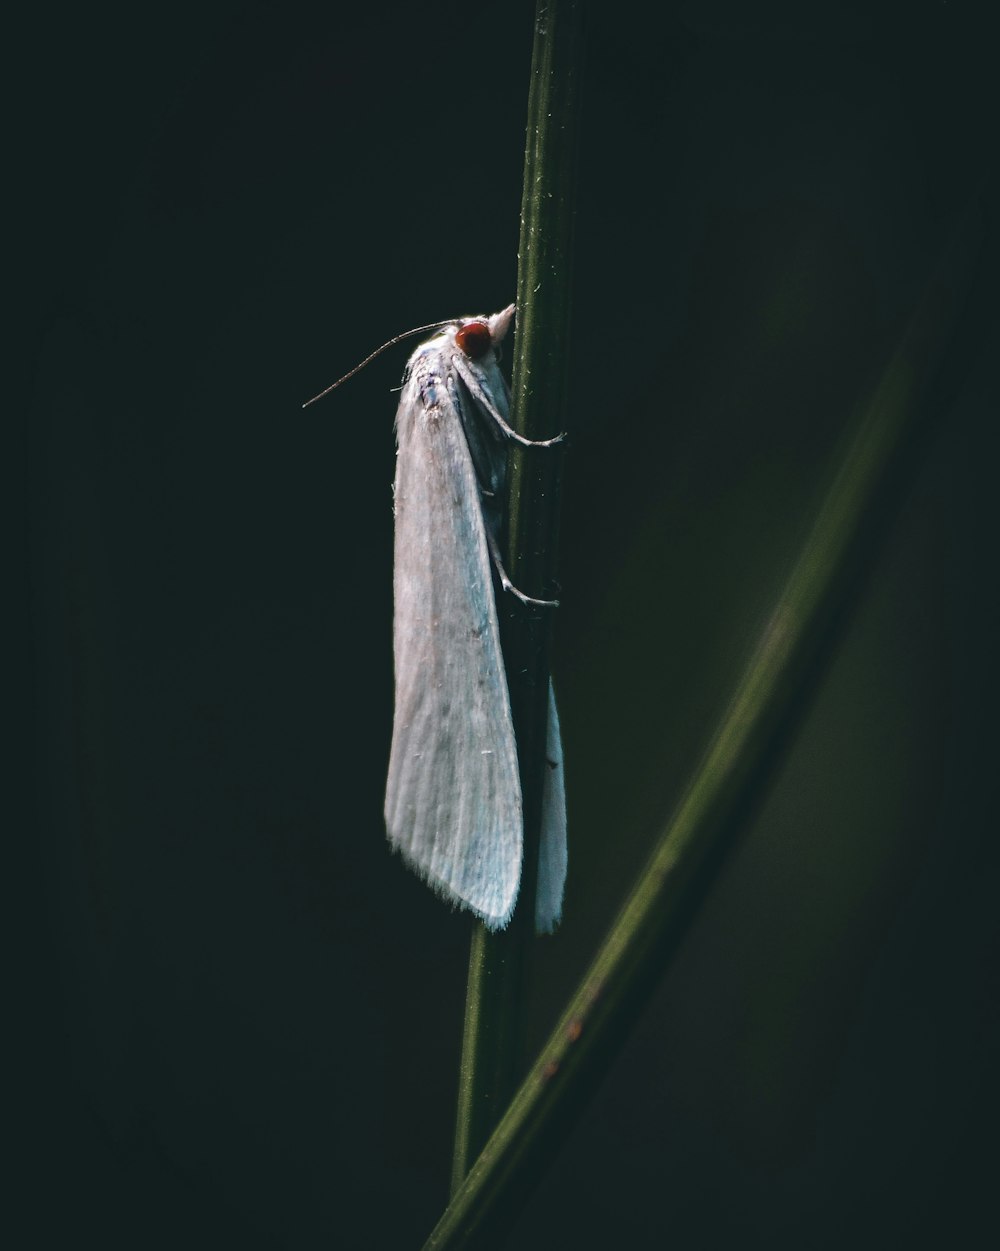 white moth on green stem